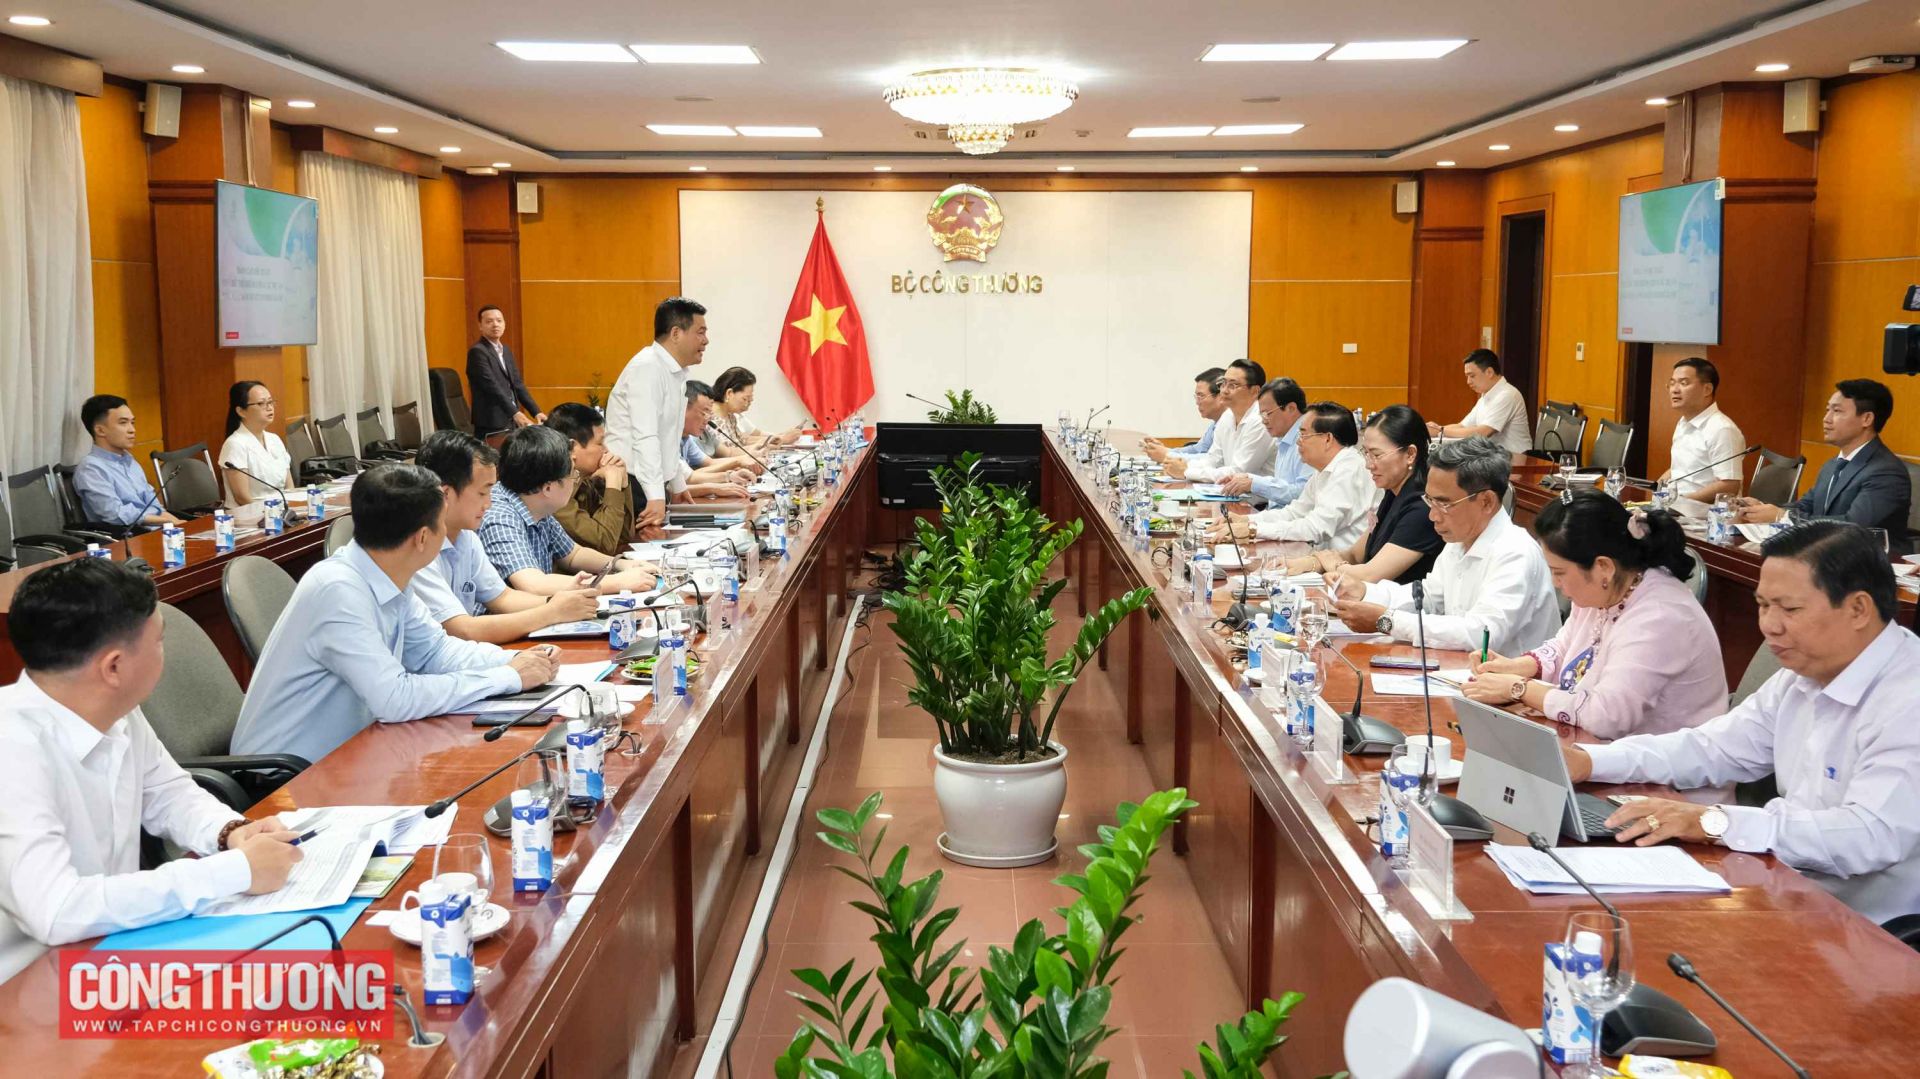 Toàn cảnh buổi làm việc giữa Bộ Công Thương và tỉnh Bến Tre, tỉnh Trà Vinh về sự án sản xuất hydro xanh tại Việt Nam